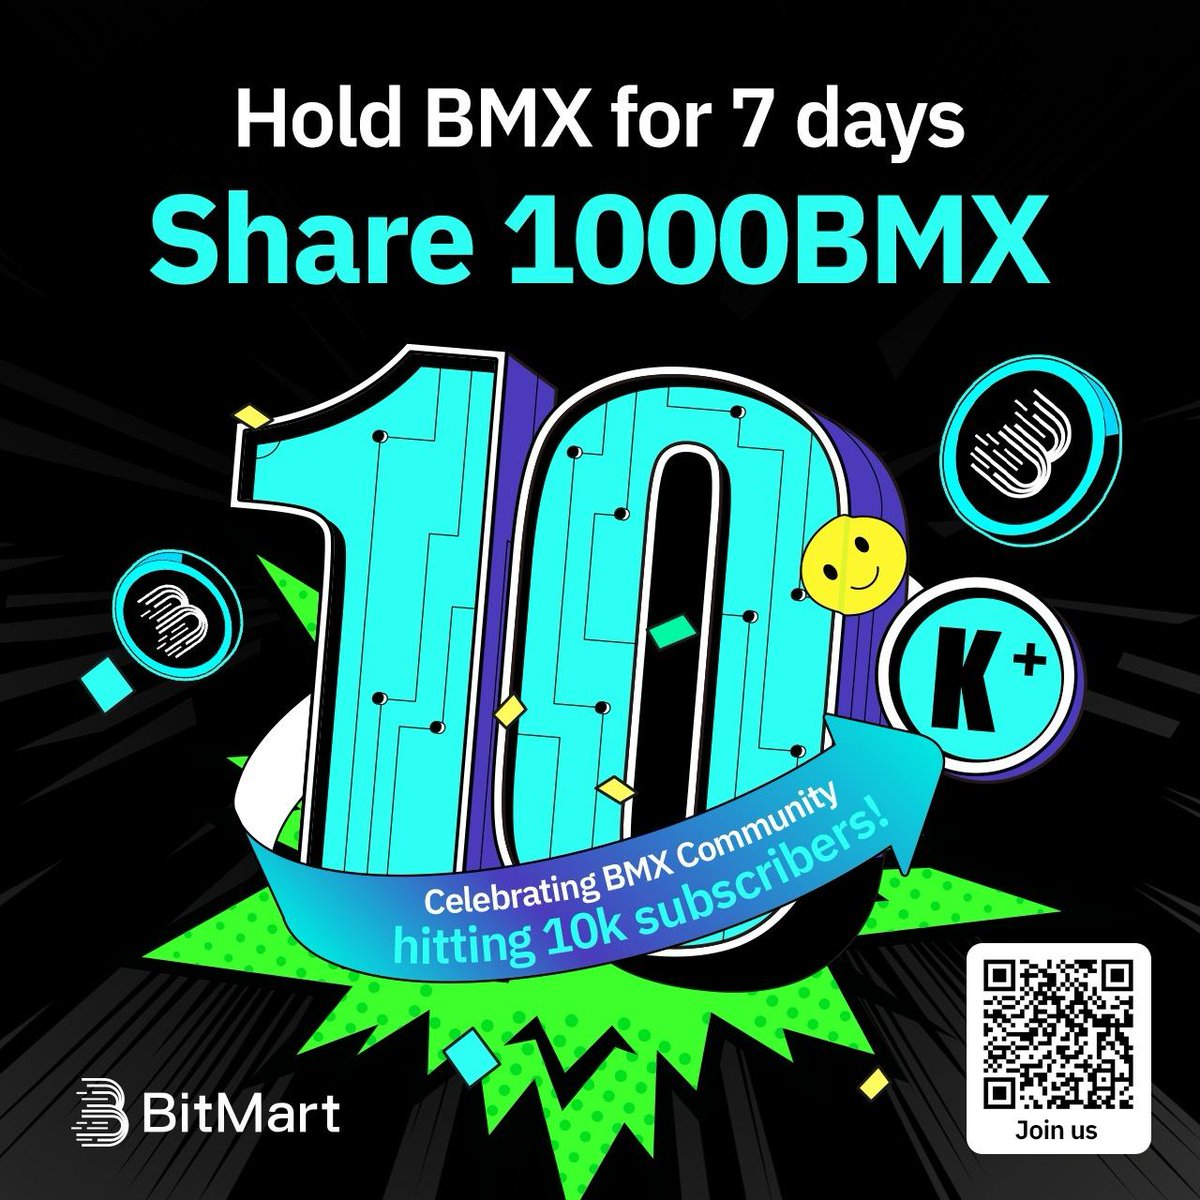 🎉Kỷ niệm Cộng đồng #BMX đạt hơn 10 nghìn người đăng ký! 🙋Nắm giữ $BMX trong 7 ngày, và chia sẻ 1000 BMX! 🔹Follow @BitMartExchange @BitMartResearch 🔹Tham gia t.me/bmxcommunity 🔹Điền form: forms.gle/bgnzZvkNwAndAG… 👉Đăng ký tài khoản BitMart để nhận phần